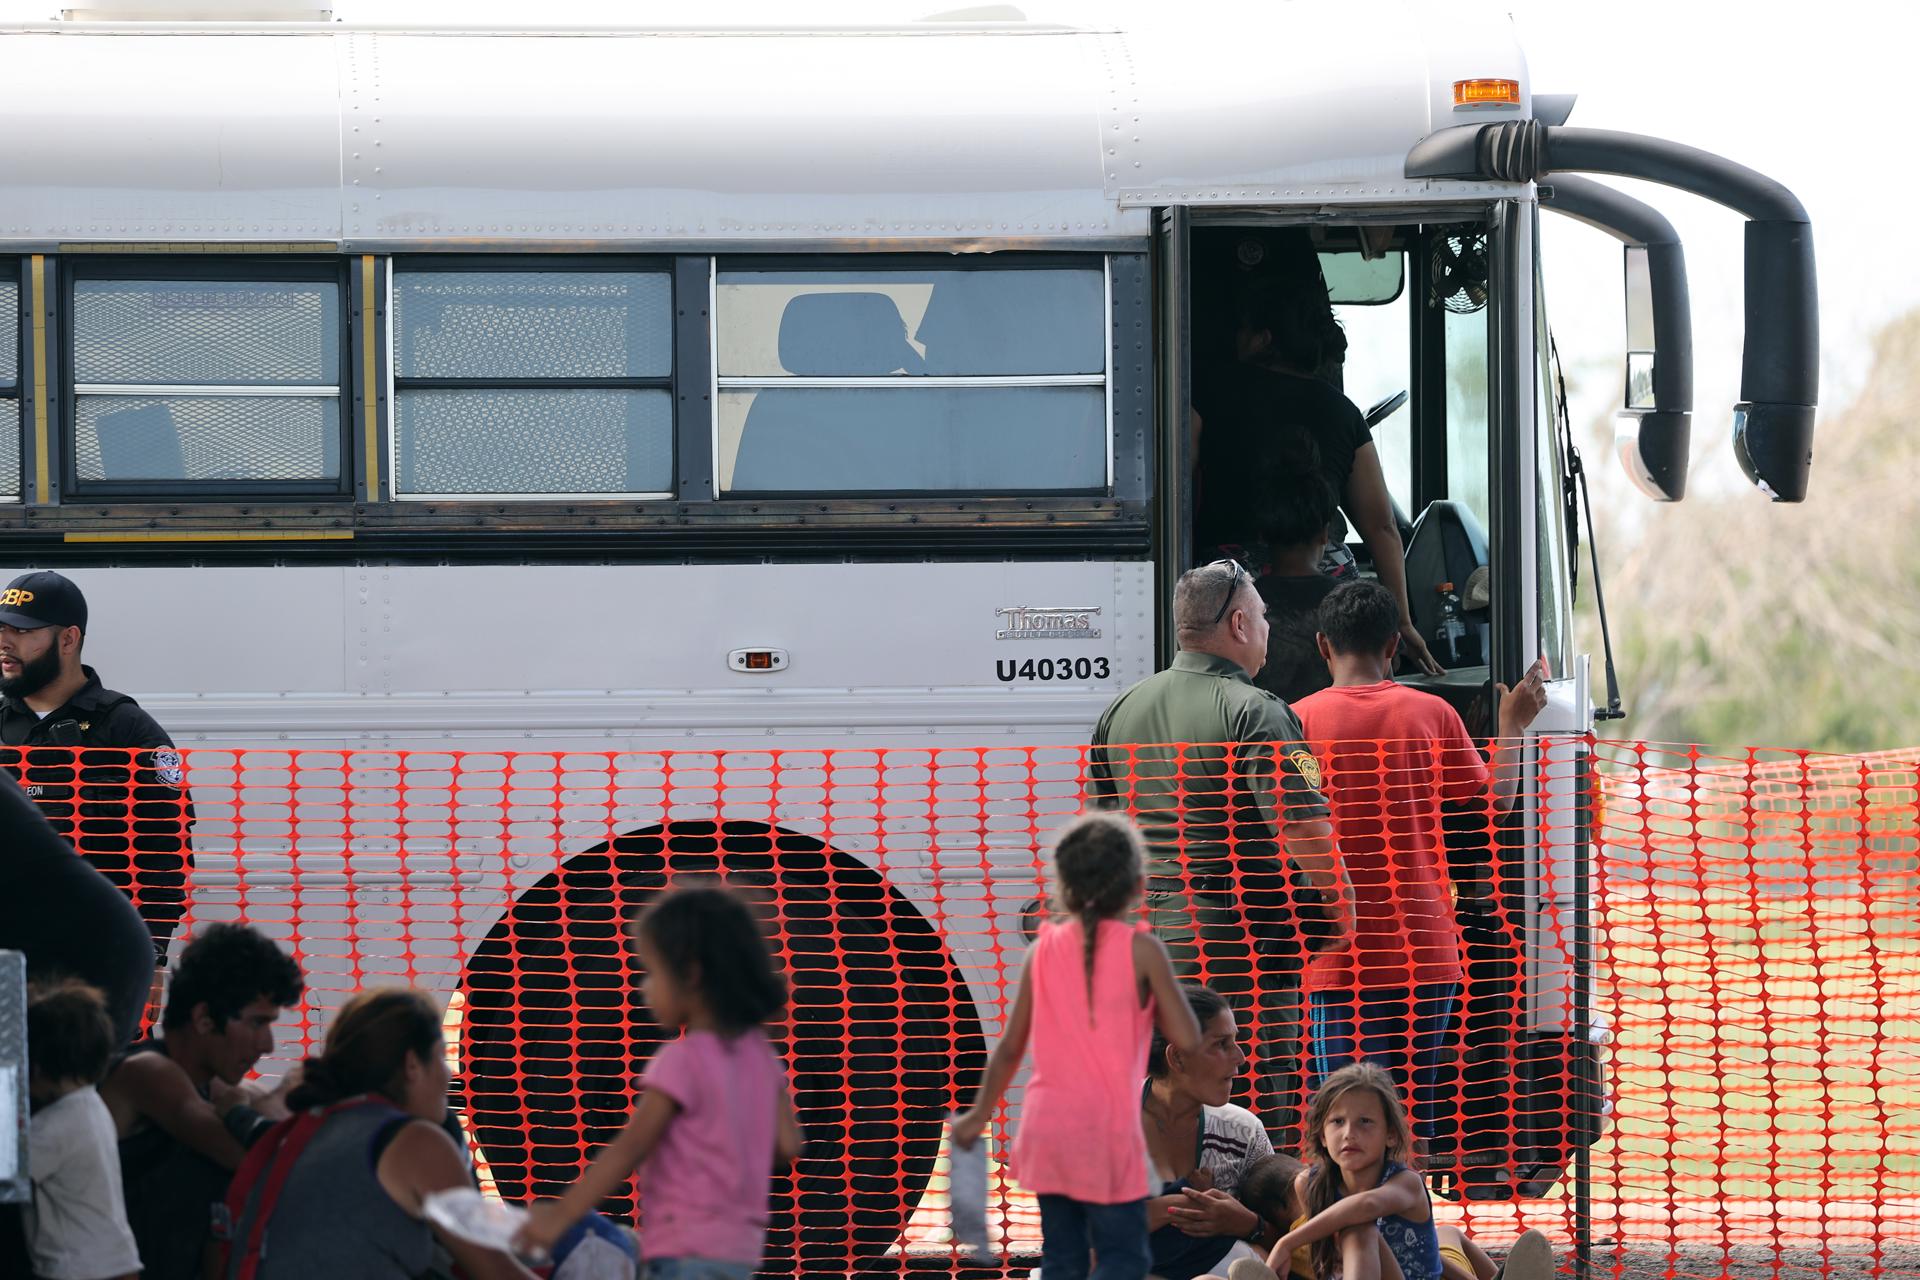 Gobernador de Texas desplegó más autobuses para enviar migrantes a ciudades santuario